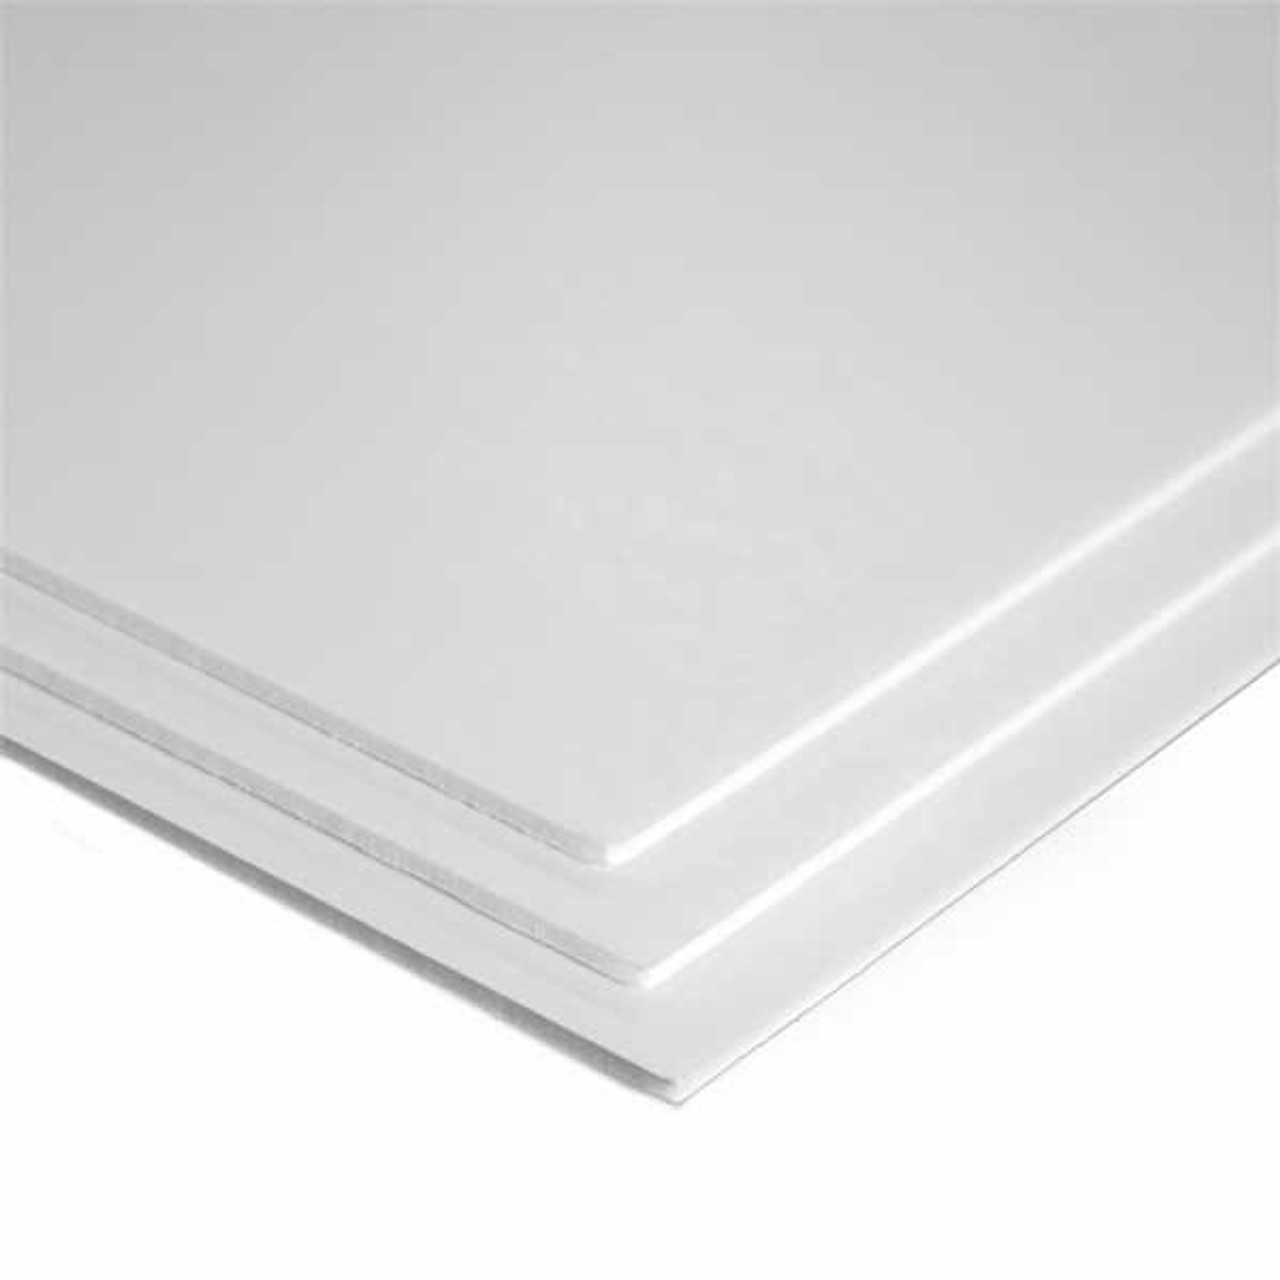 Lot of 4 NEW Foam Core Board Plastic Coated Foam Board Panel 48x96 3mm